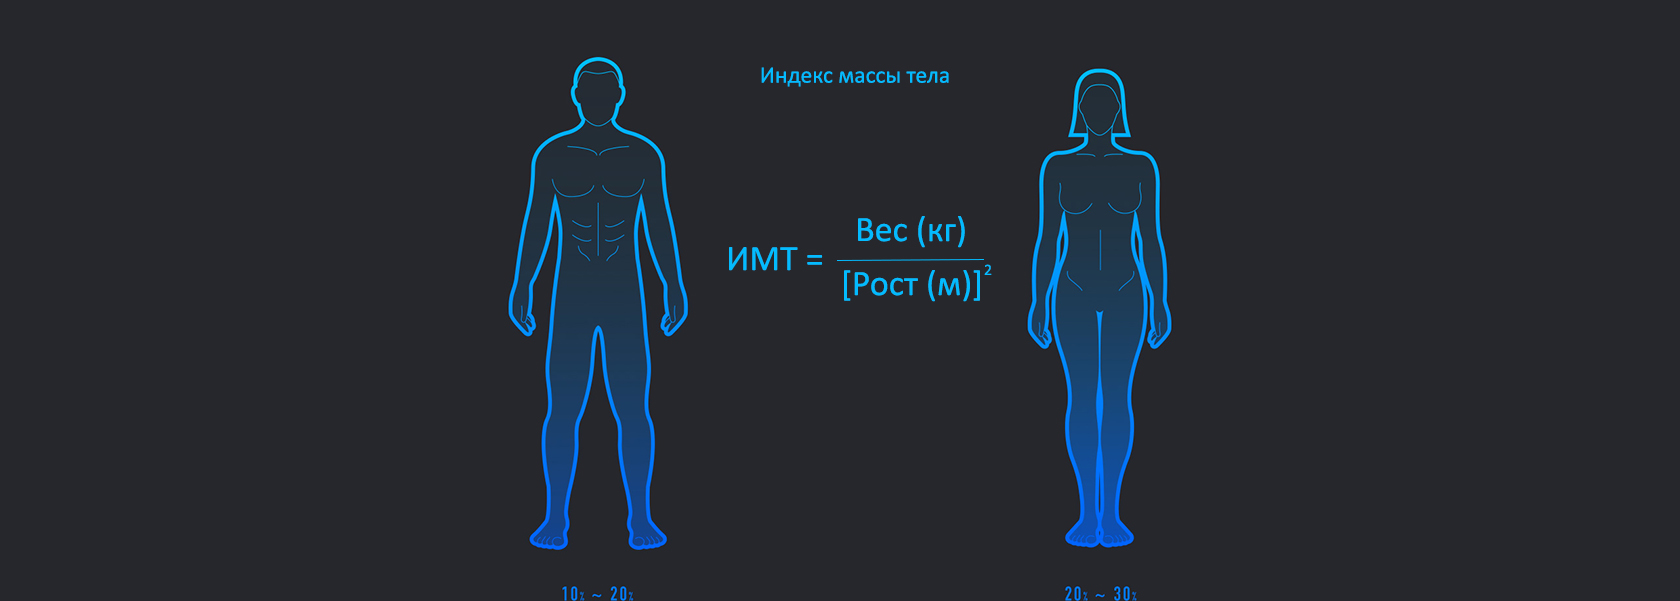 Смарт-ваги Xiaomi Body Composition Scales